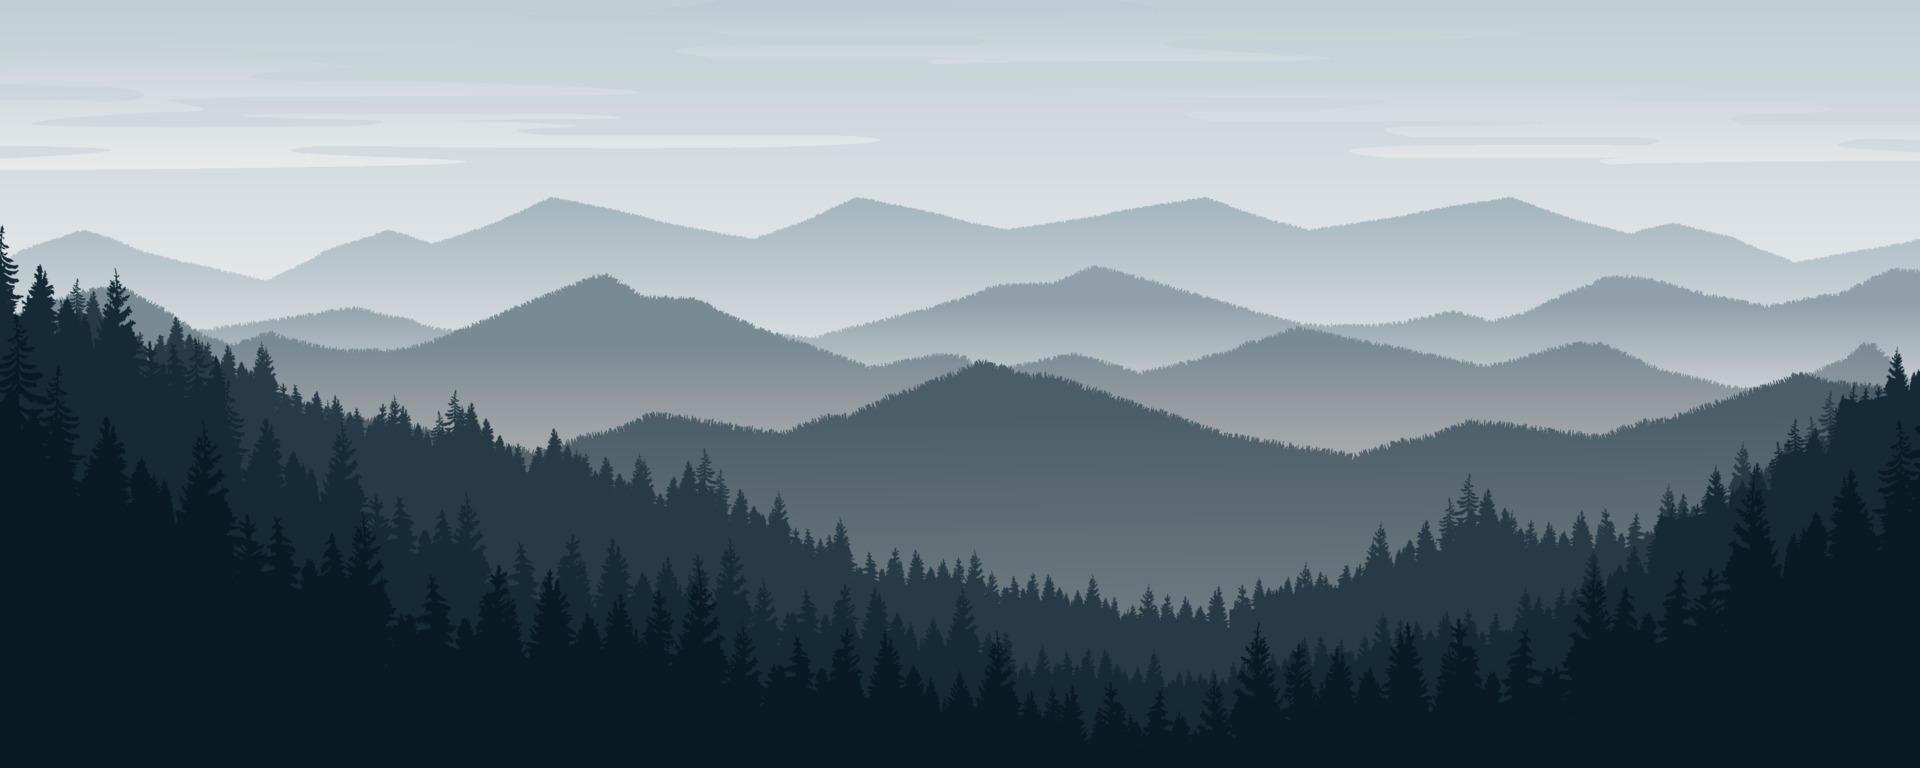 paisaje montañoso con pinos y bosques bajo cielos invernales. vector